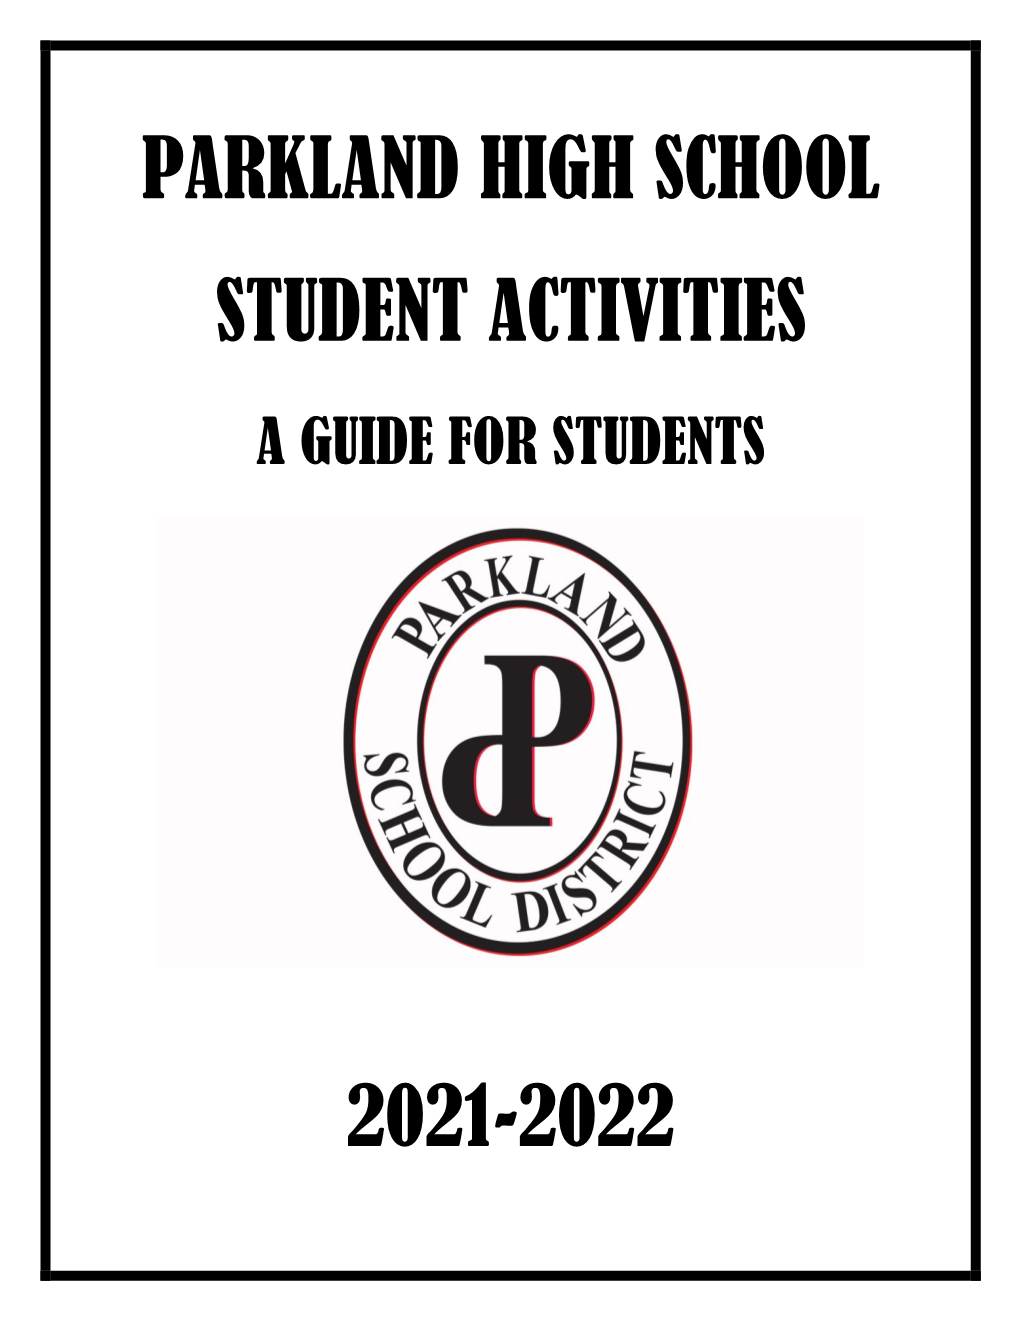 Parkland High School Student Activities 2021-2022